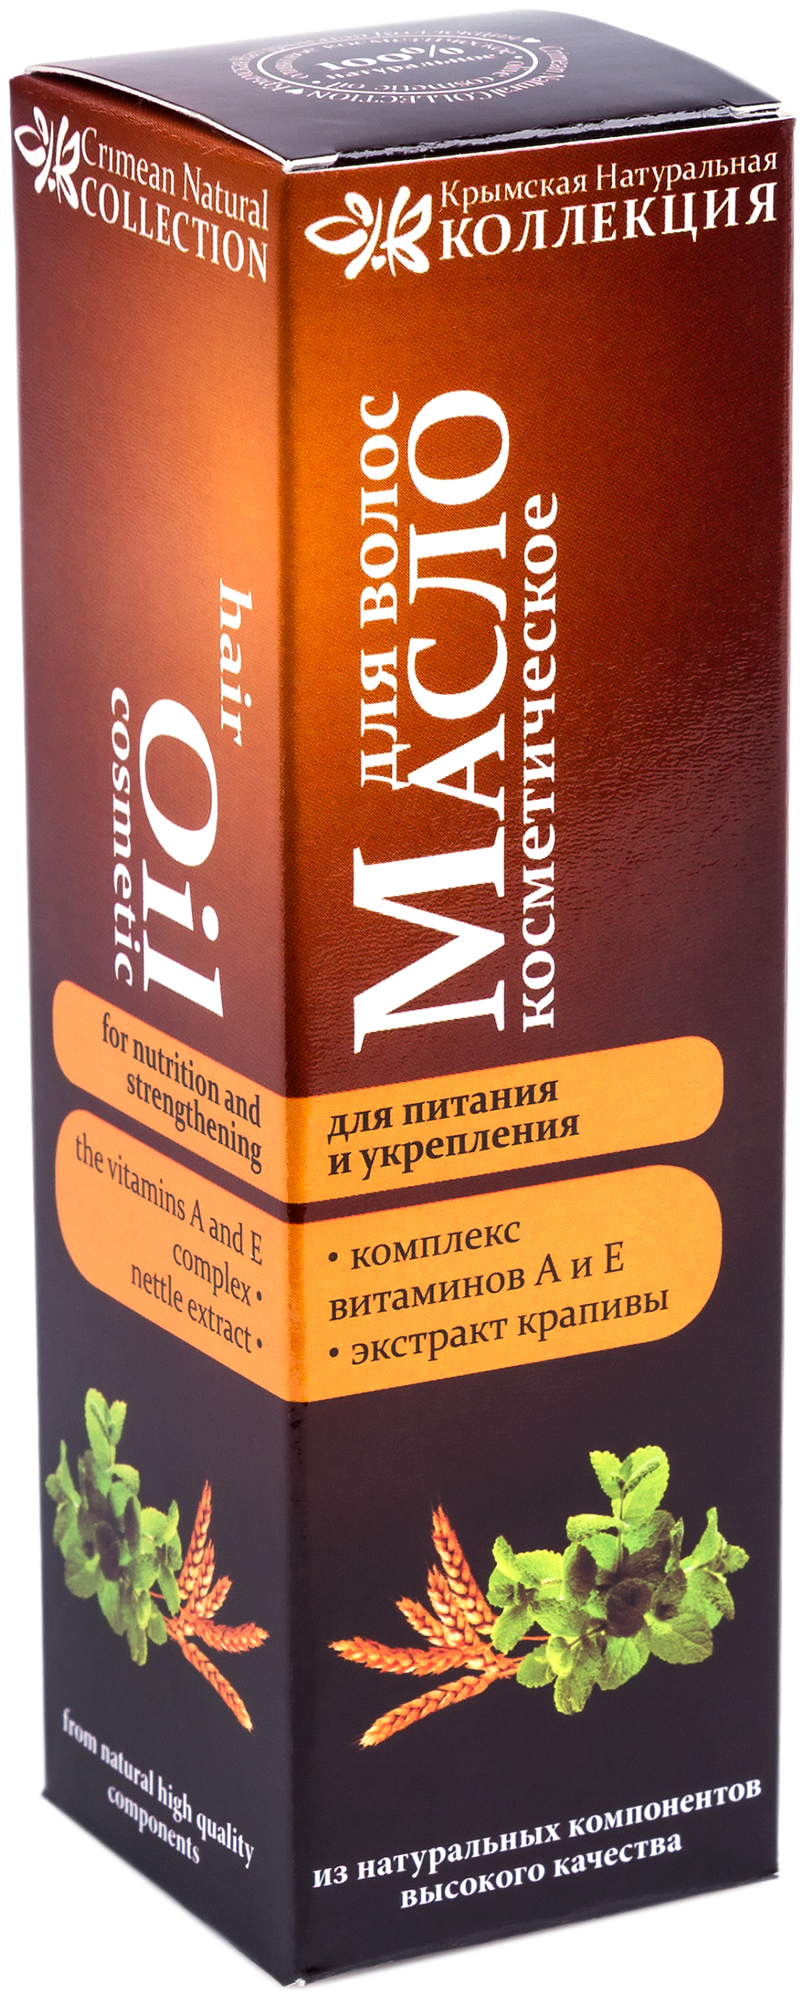 Масло для волос Crimean SPA Collection Питание и укрепление с комплексом витаминов и экстрактом крапивы. Крымская натуральная коллекция